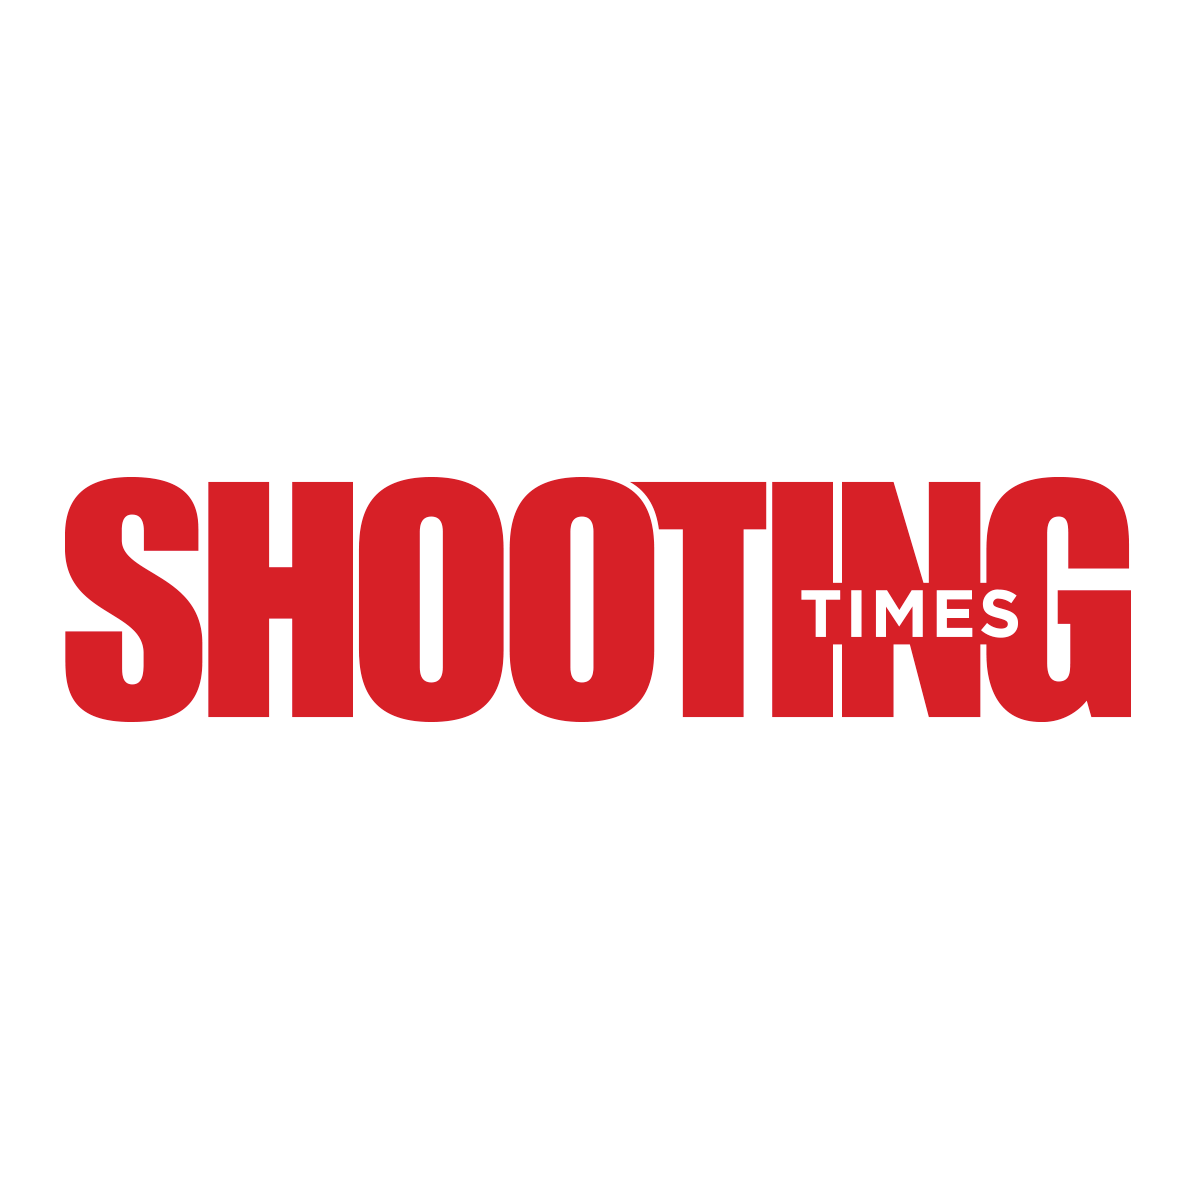 (c) Shootingtimes.com